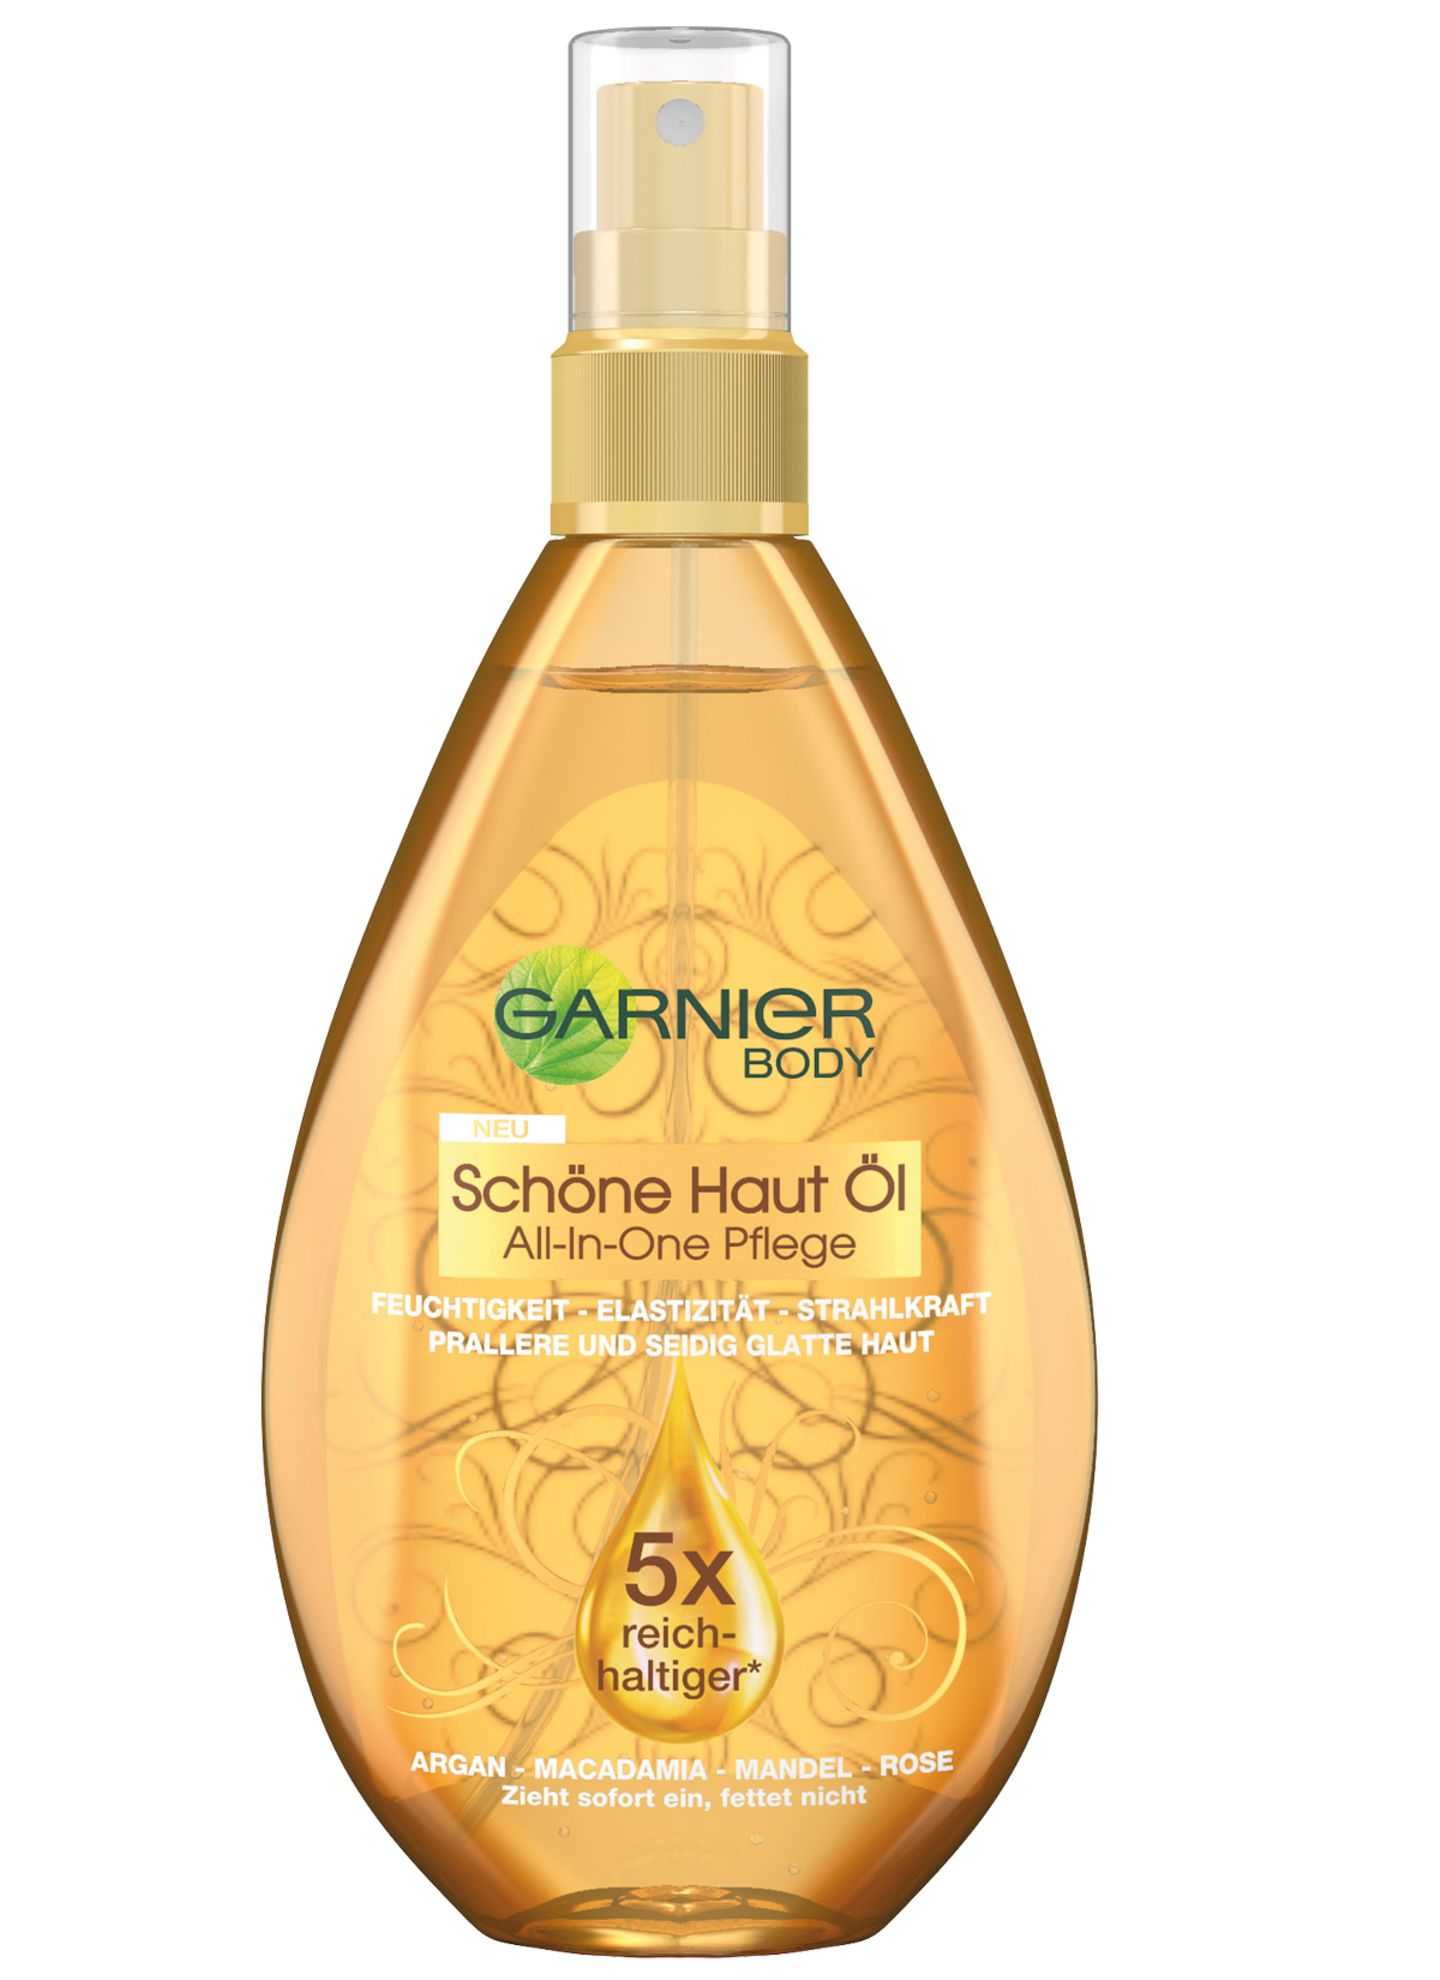 Das "Schöne Haut Öl" pflegt nachhaltig und zieht schnell ein. Von Garnier, 150 ml, ca. 7 Euro